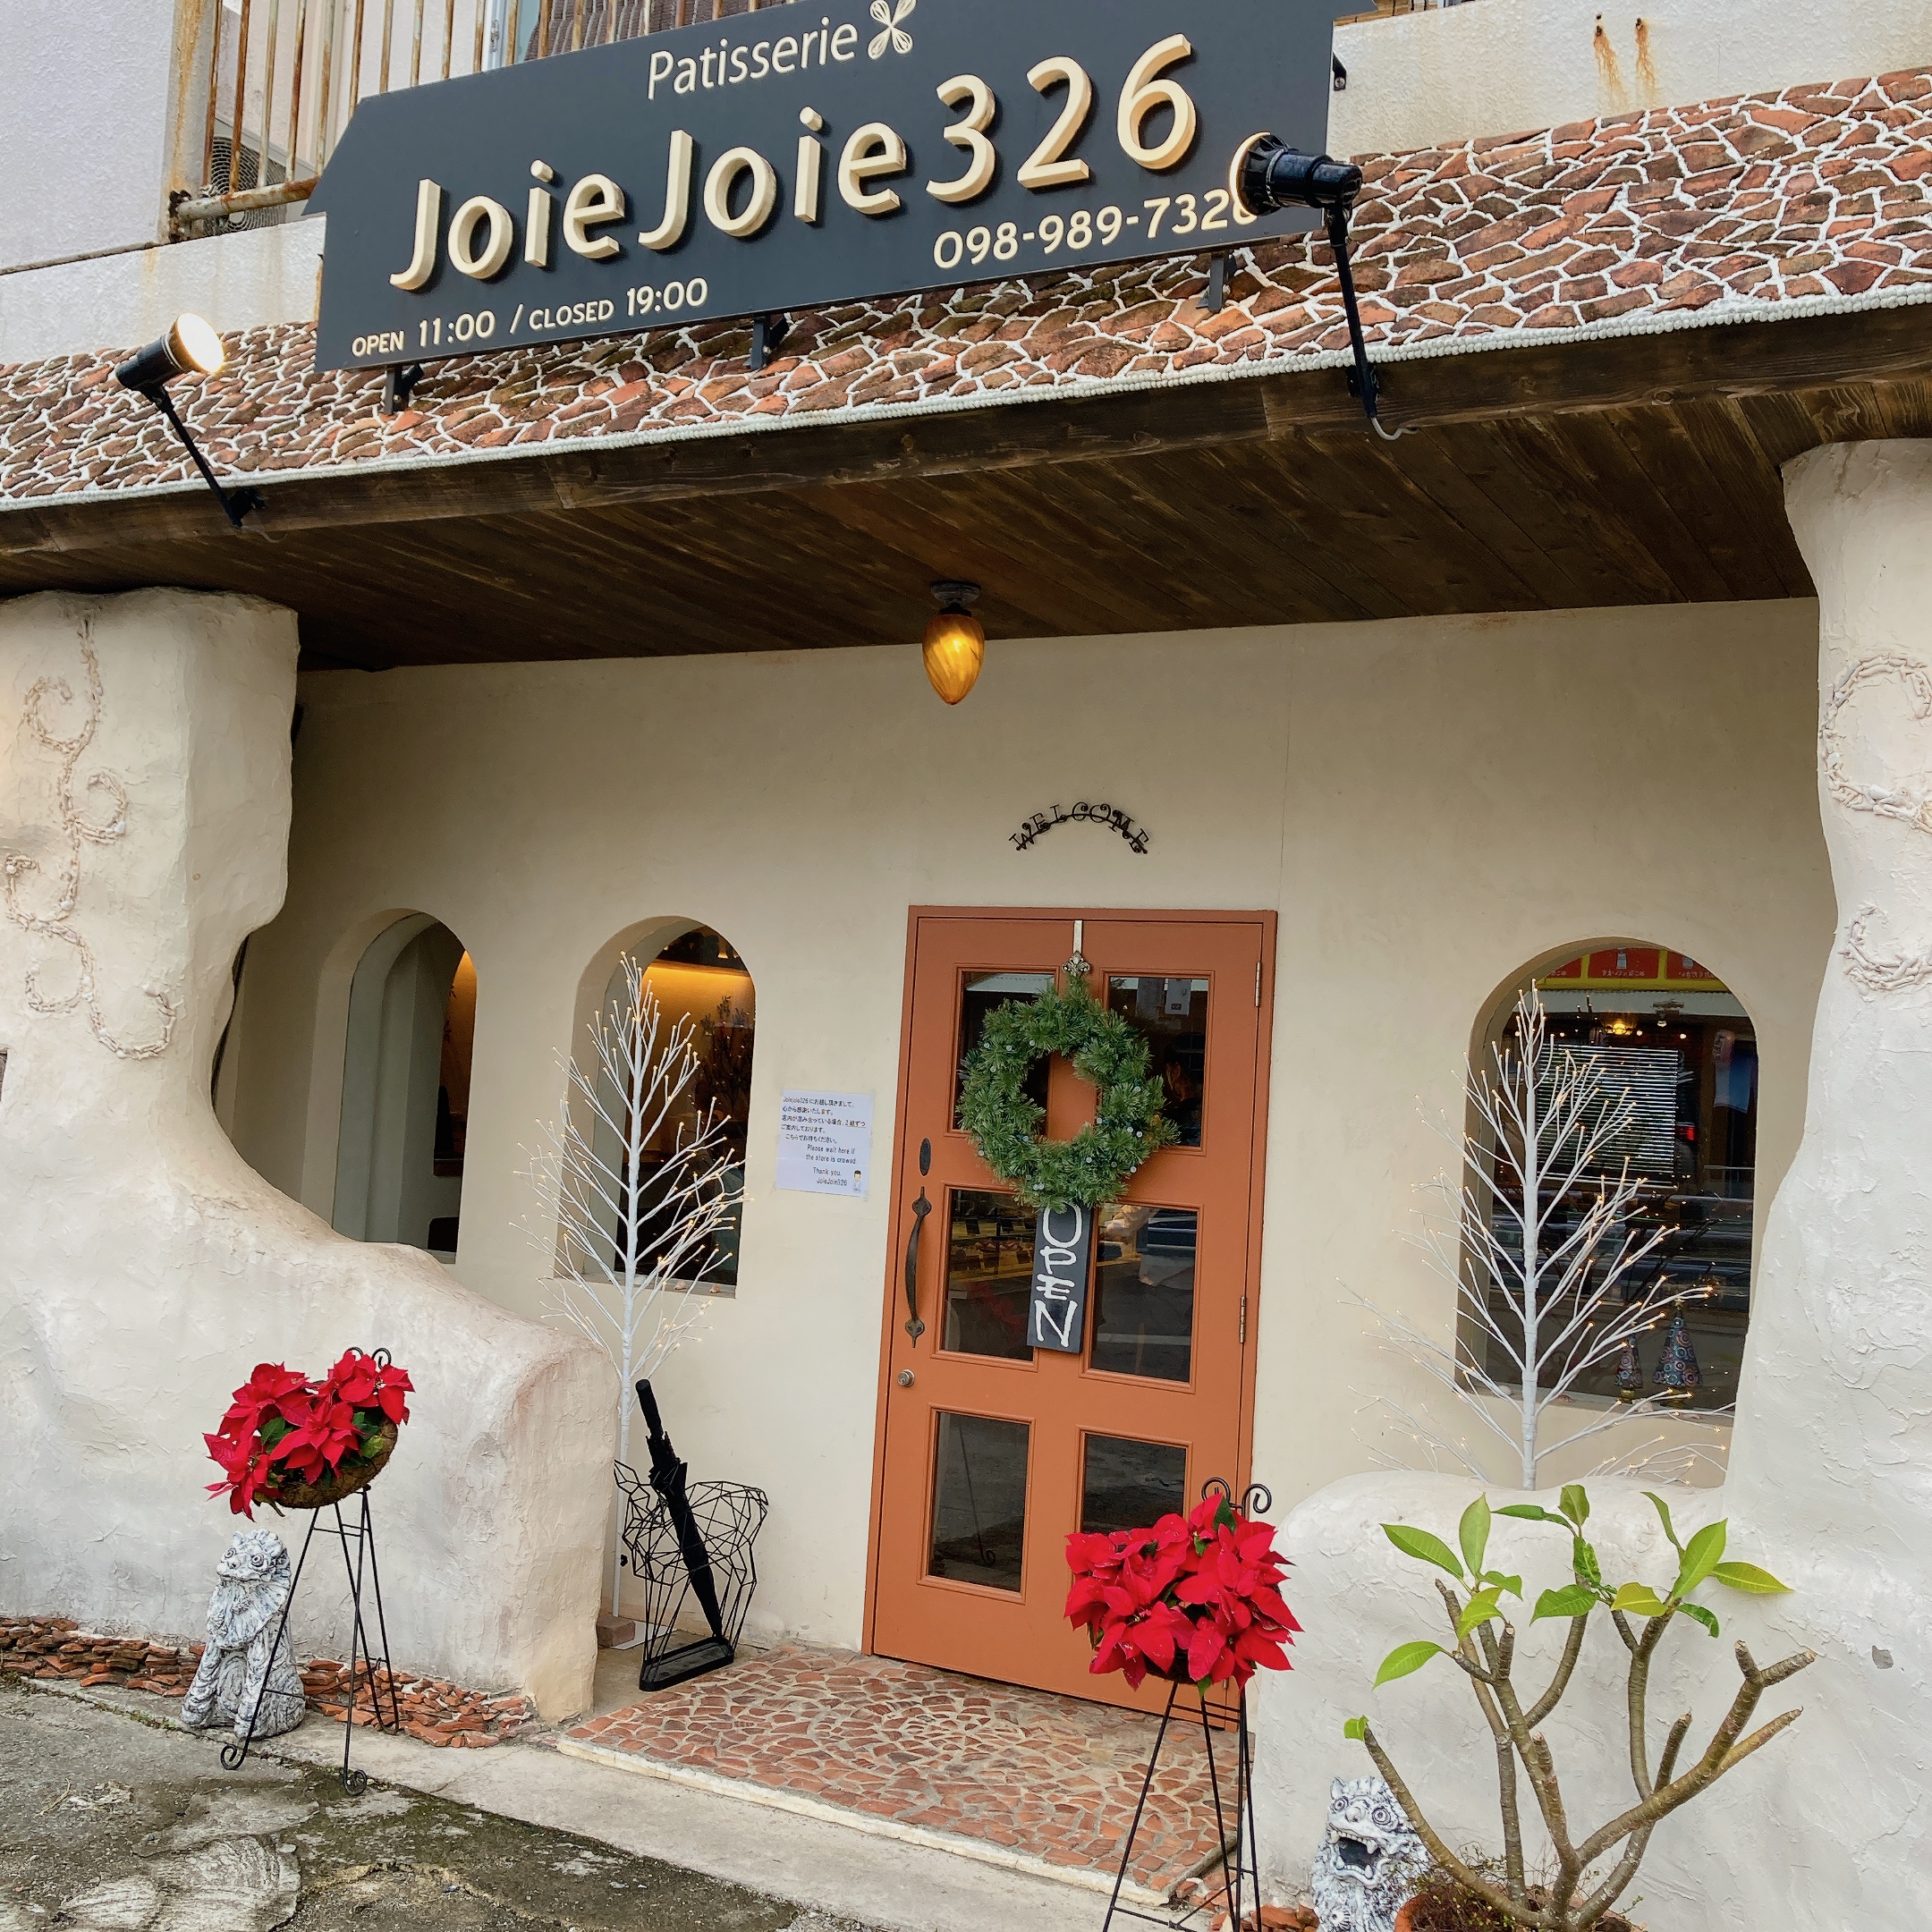 沖縄の美味しいケーキ屋さん2位で見た「Patisserie Joie Joie 326」